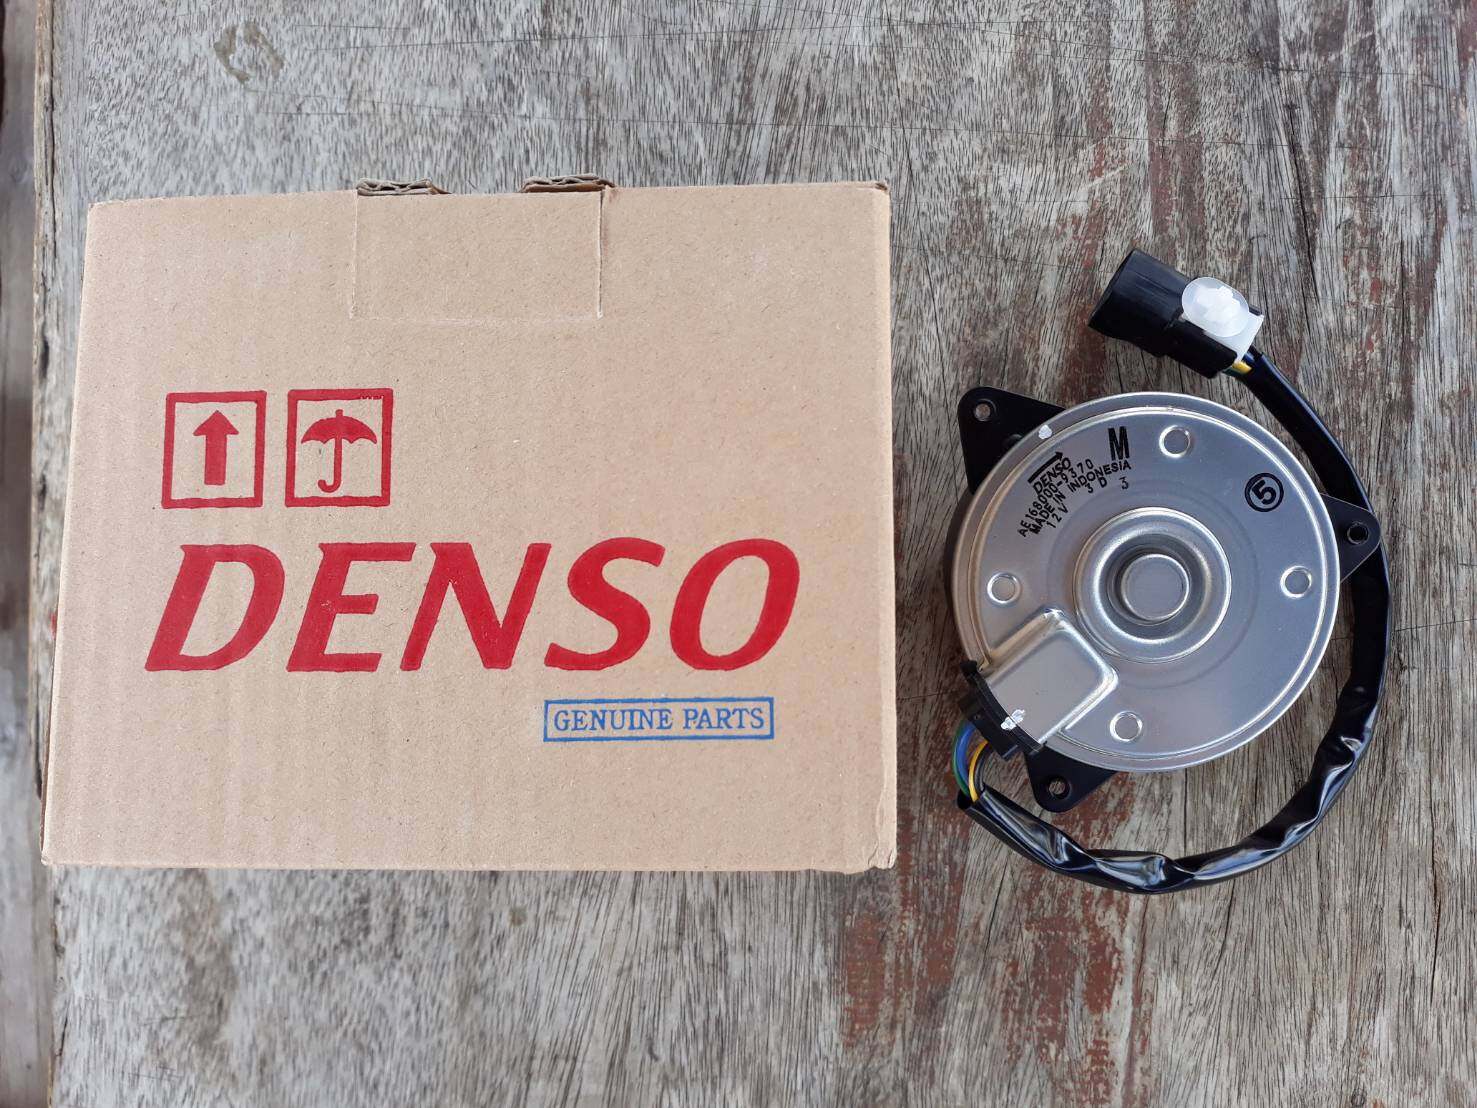 มอเตอร์ ของแท้ DENSO พัดลม แผงร้อน หม้อน้ำ ซูซูกิ แครี่ Suzuki Carry